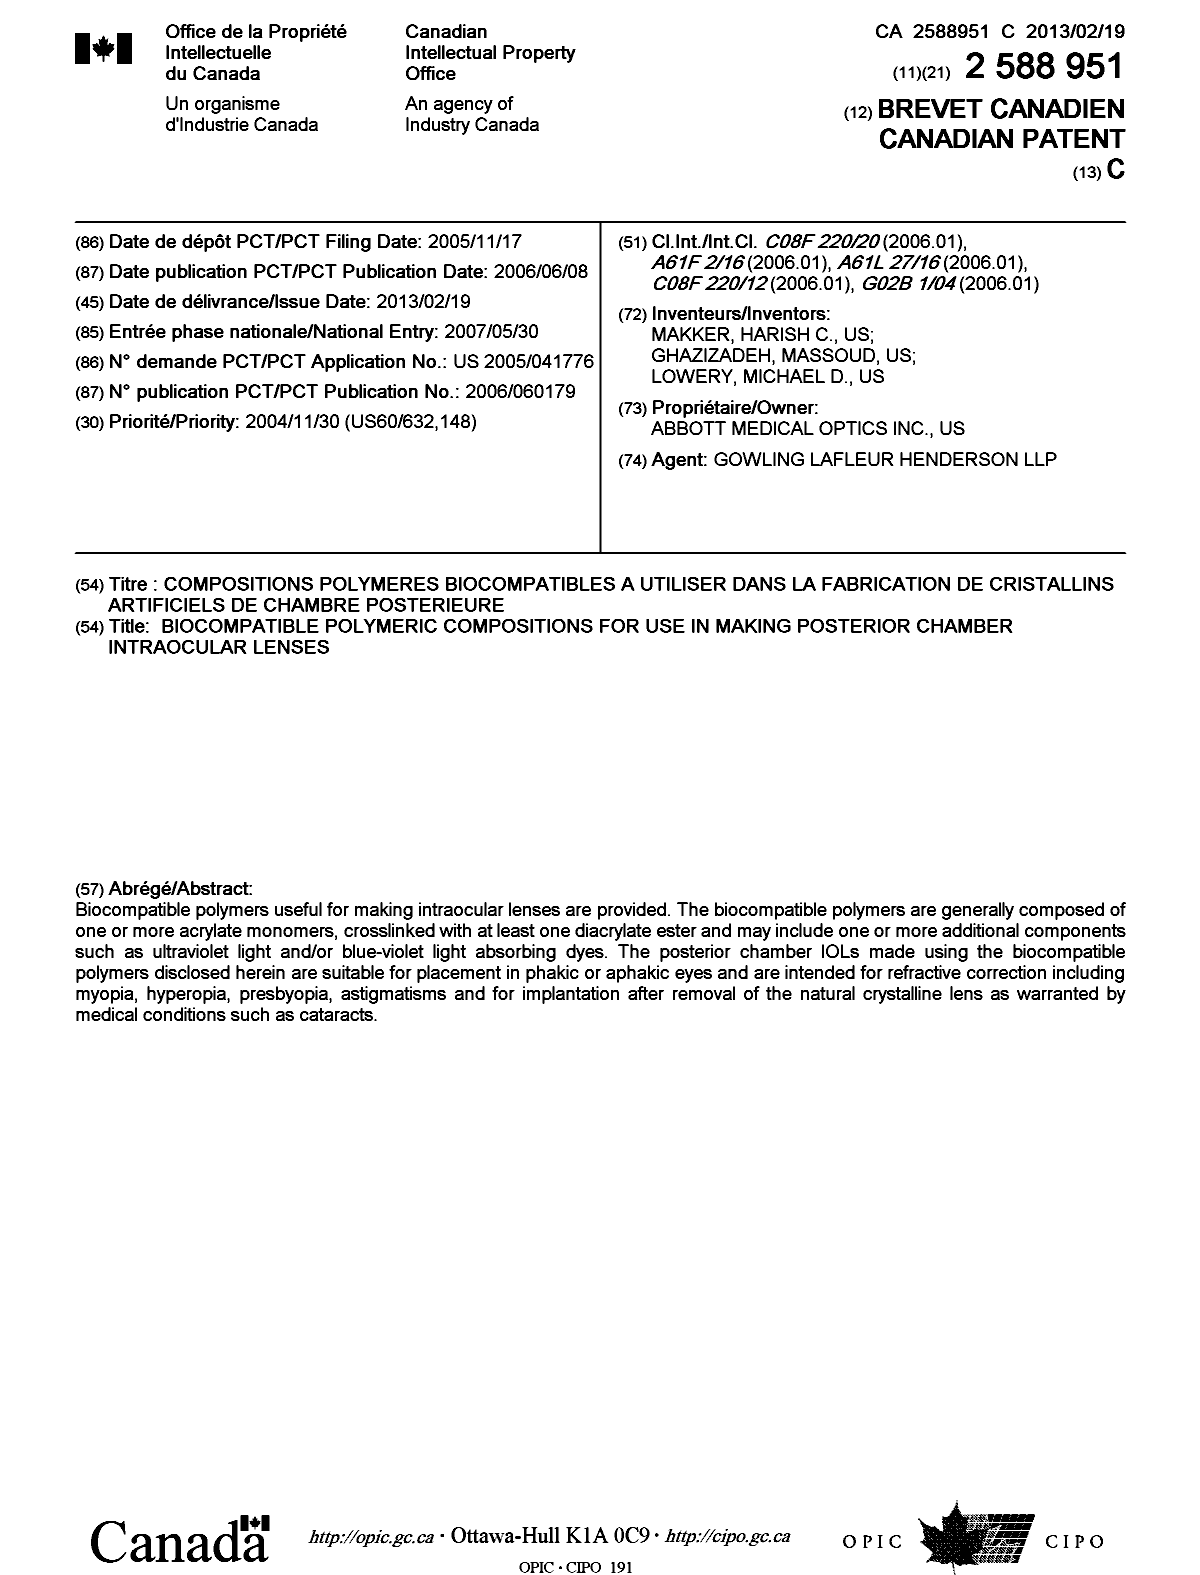 Document de brevet canadien 2588951. Page couverture 20130124. Image 1 de 1